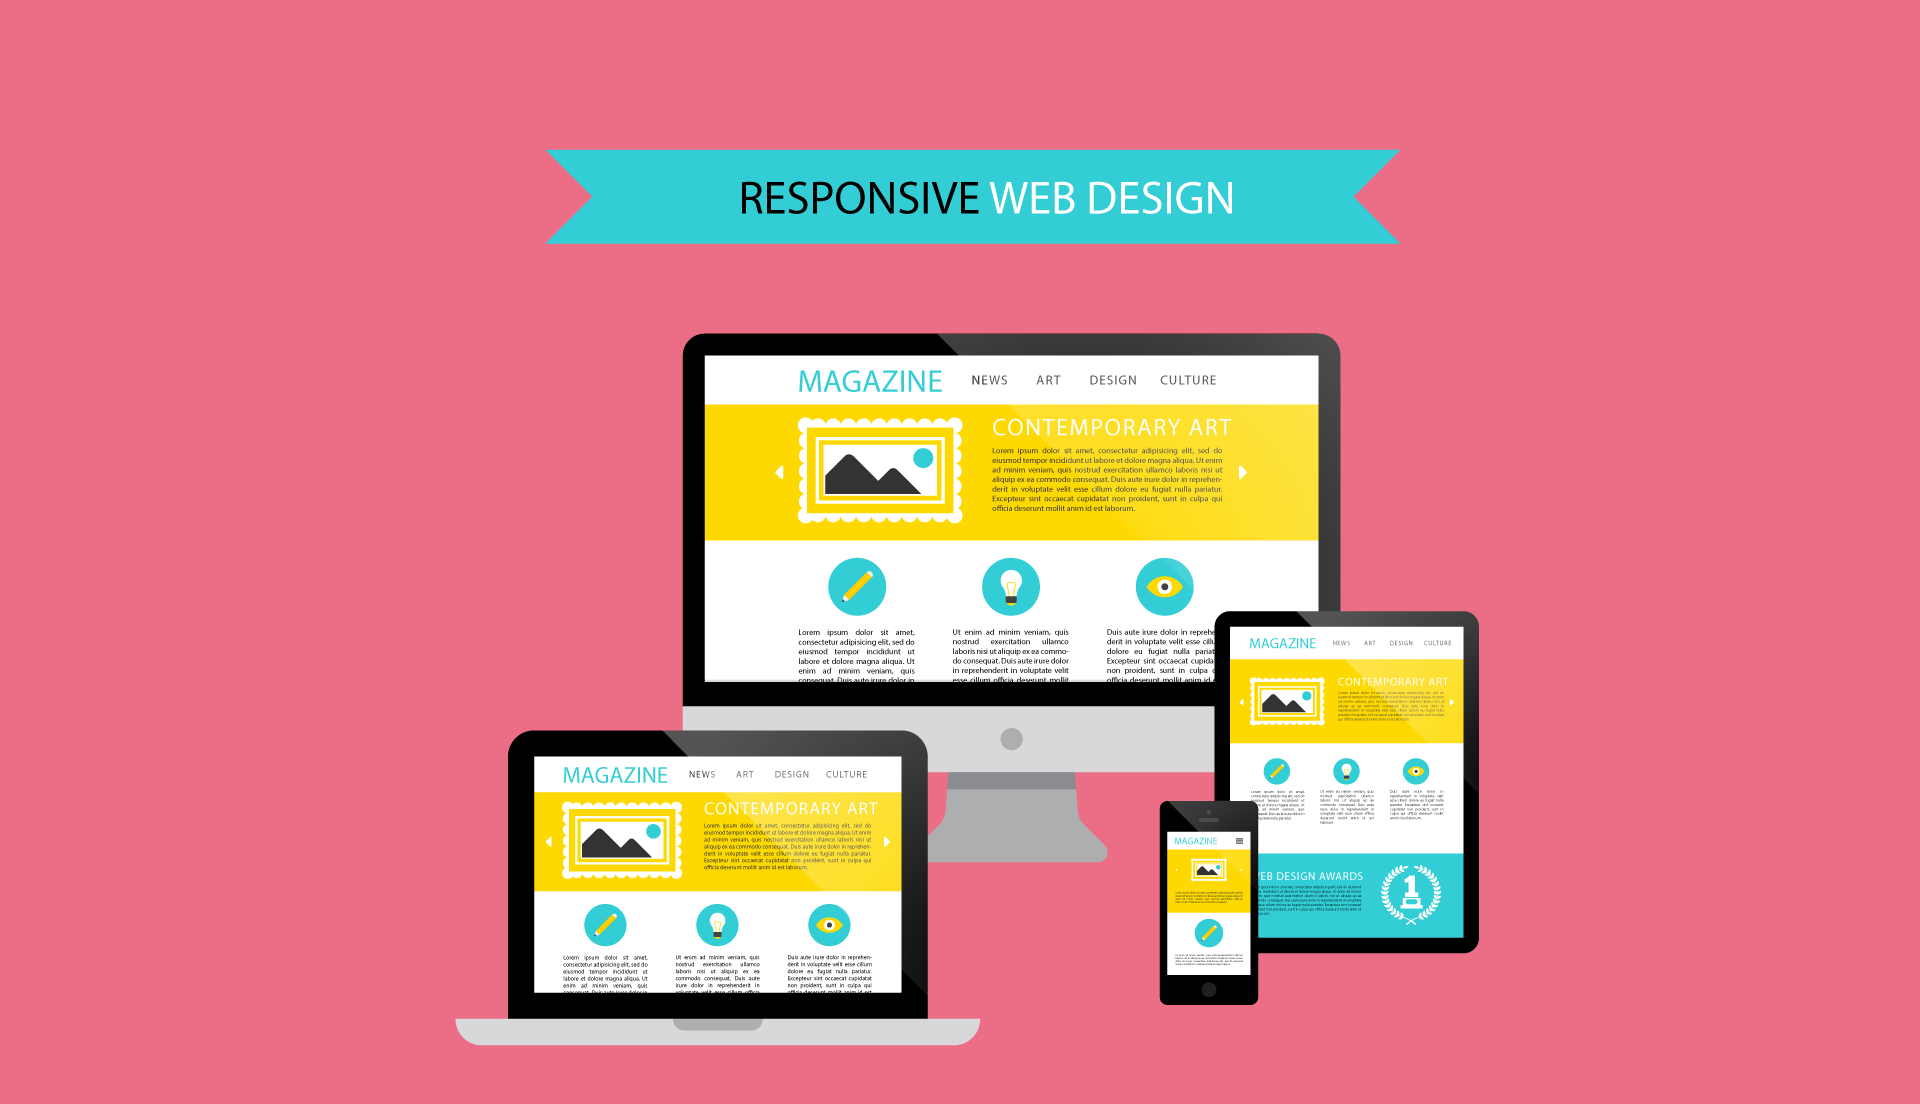 เทคนิคการทำ Responsive Design ที่จะช่วยให้เว็บไซต์ของคุณน่าสนใจ 